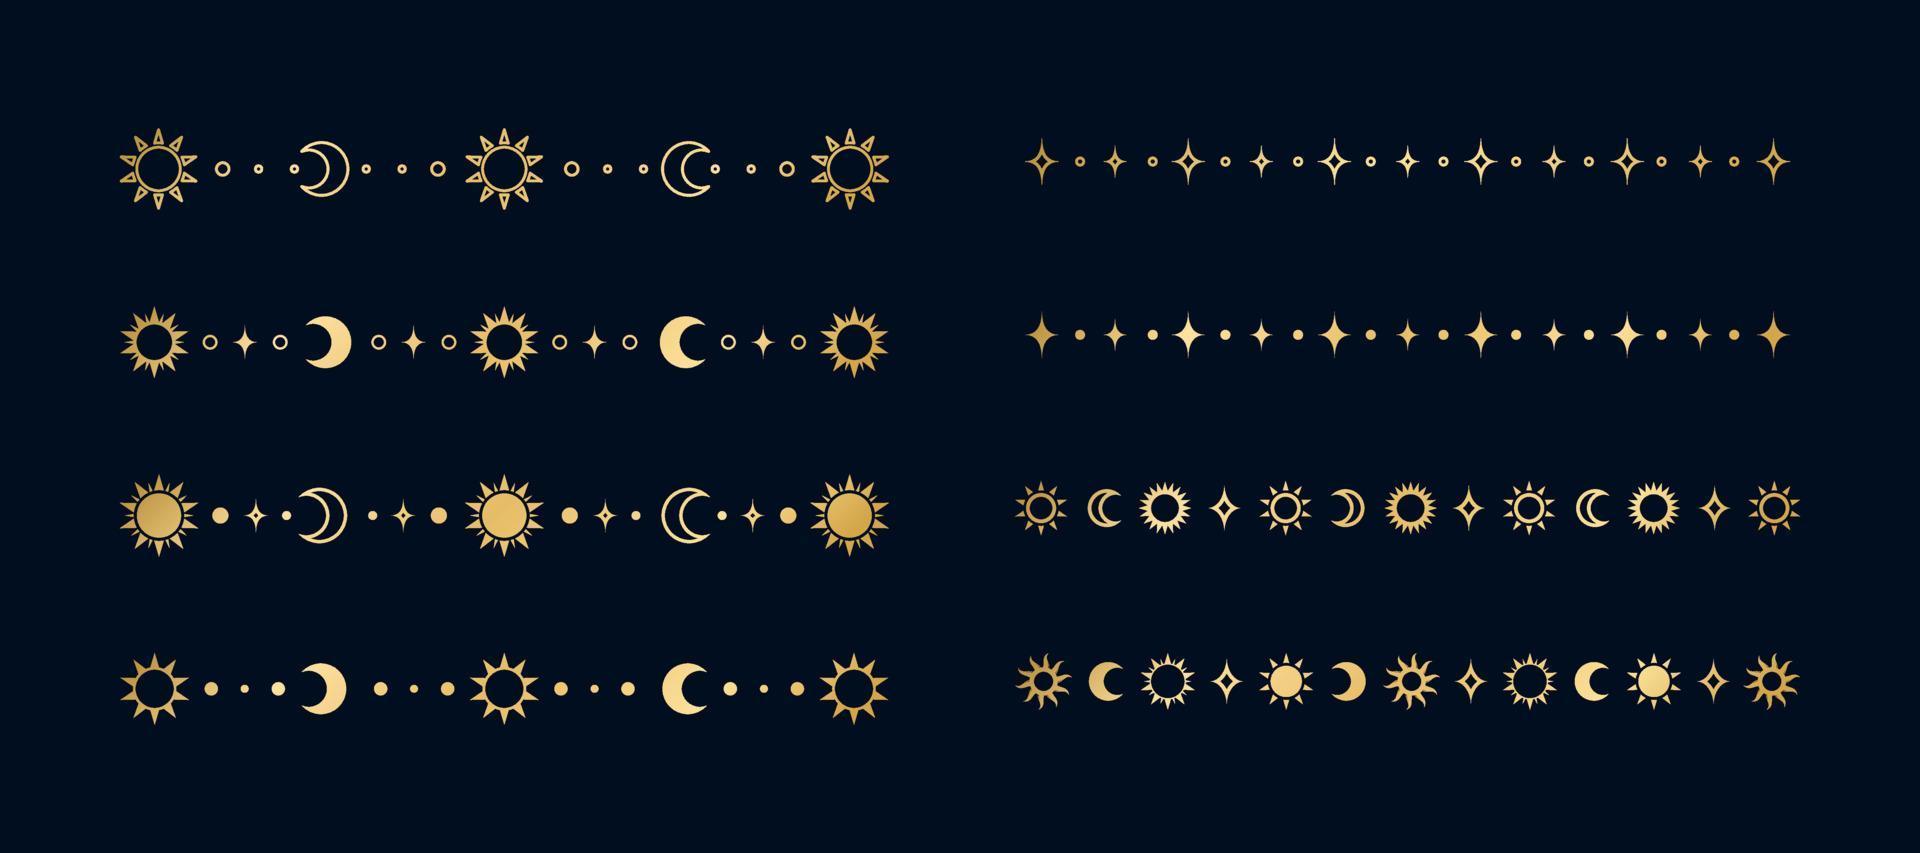 ouro celestial separador conjunto com sol, estrelas, lua fases, crescentes. ornamentado boho místico divisor decorativo elemento vetor